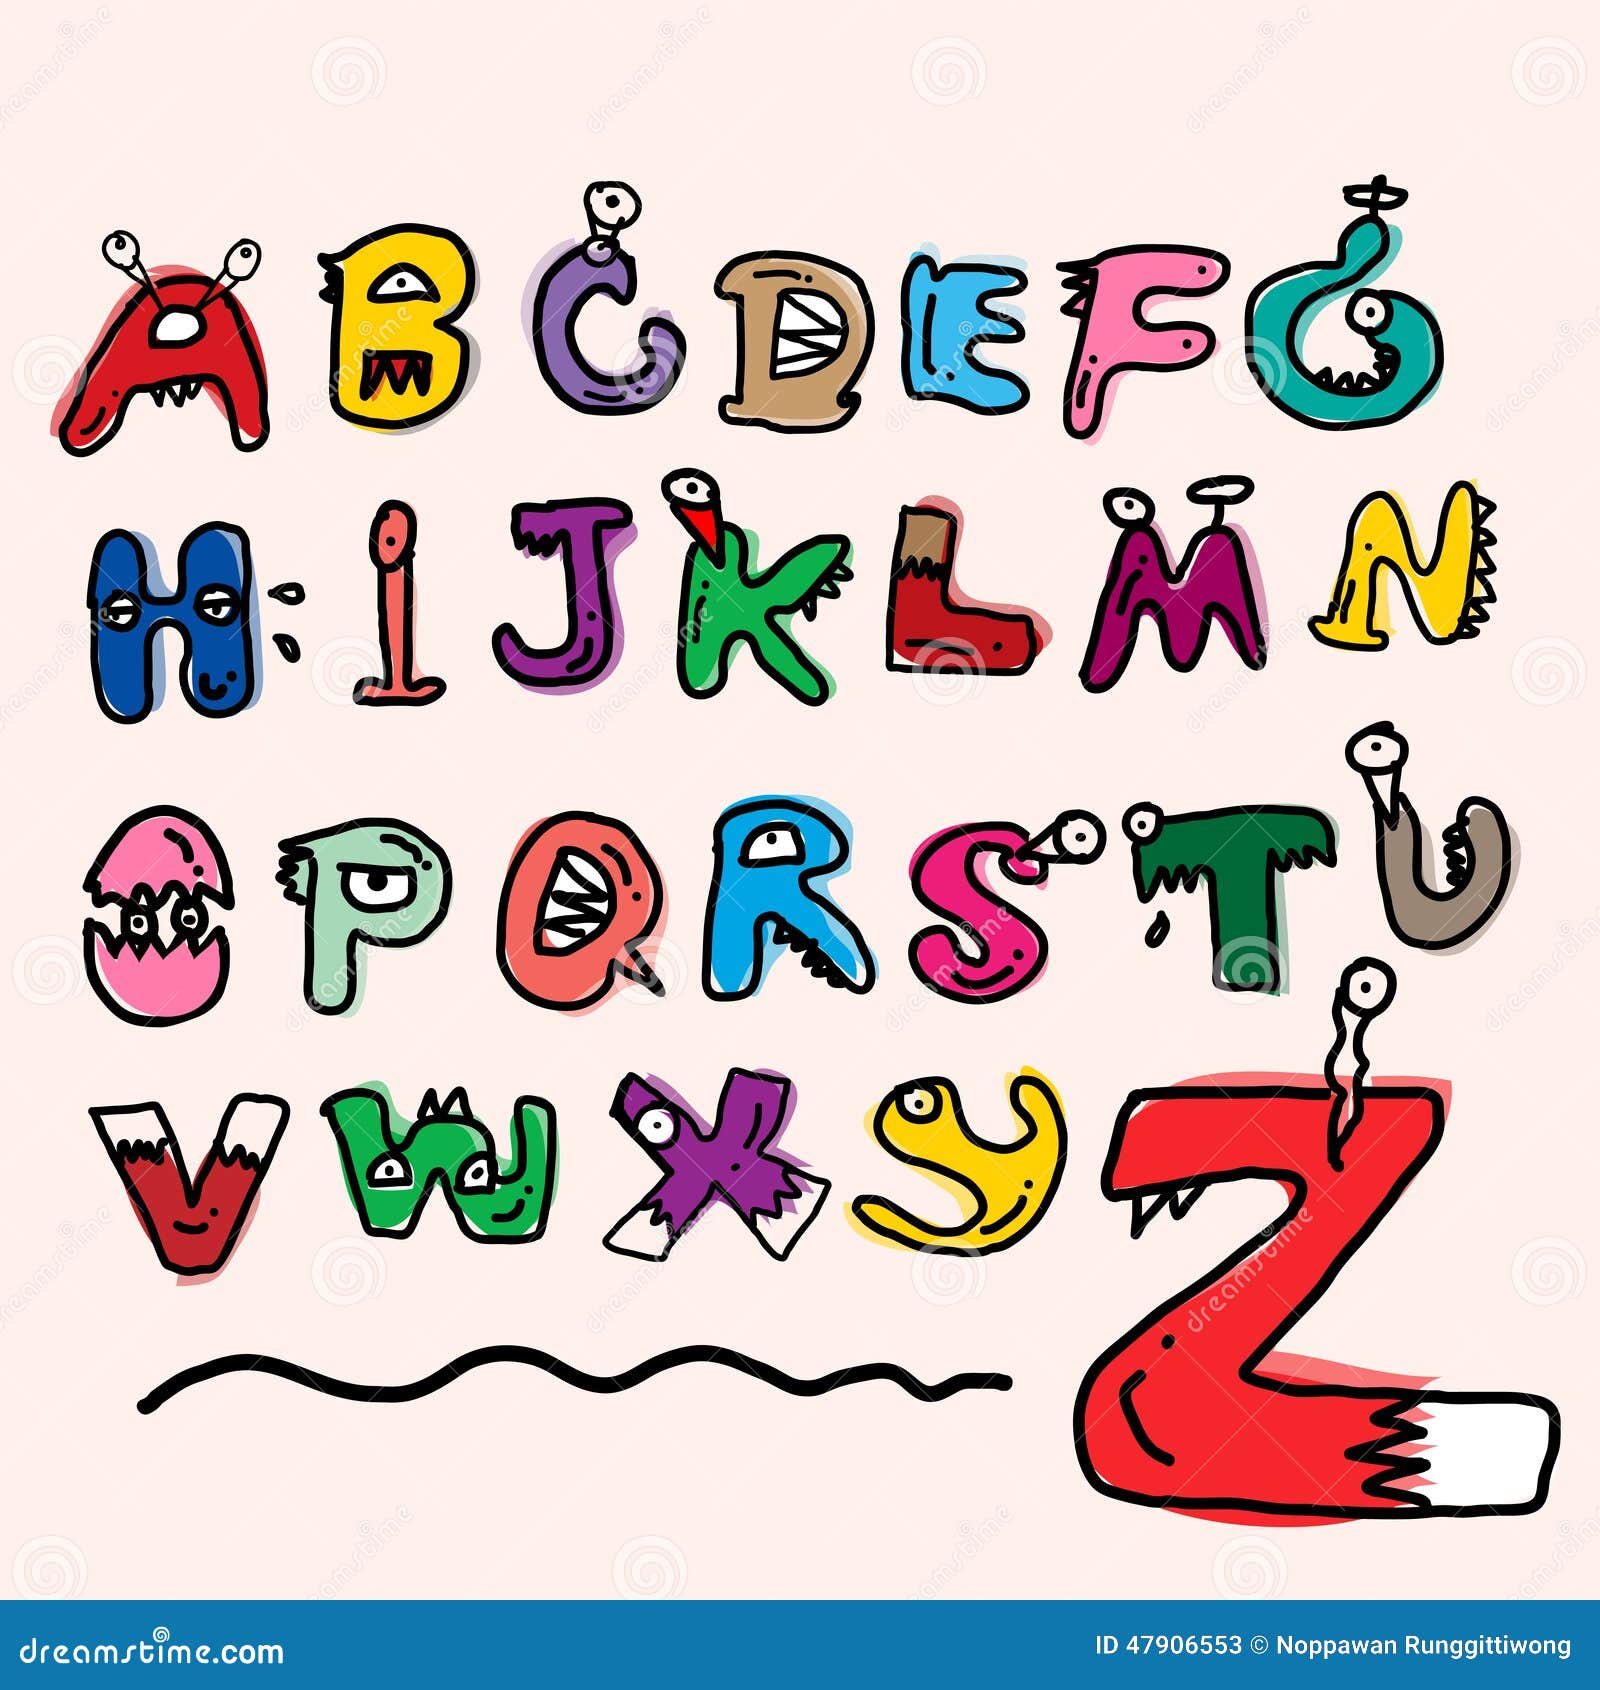 children alphabet spelled out